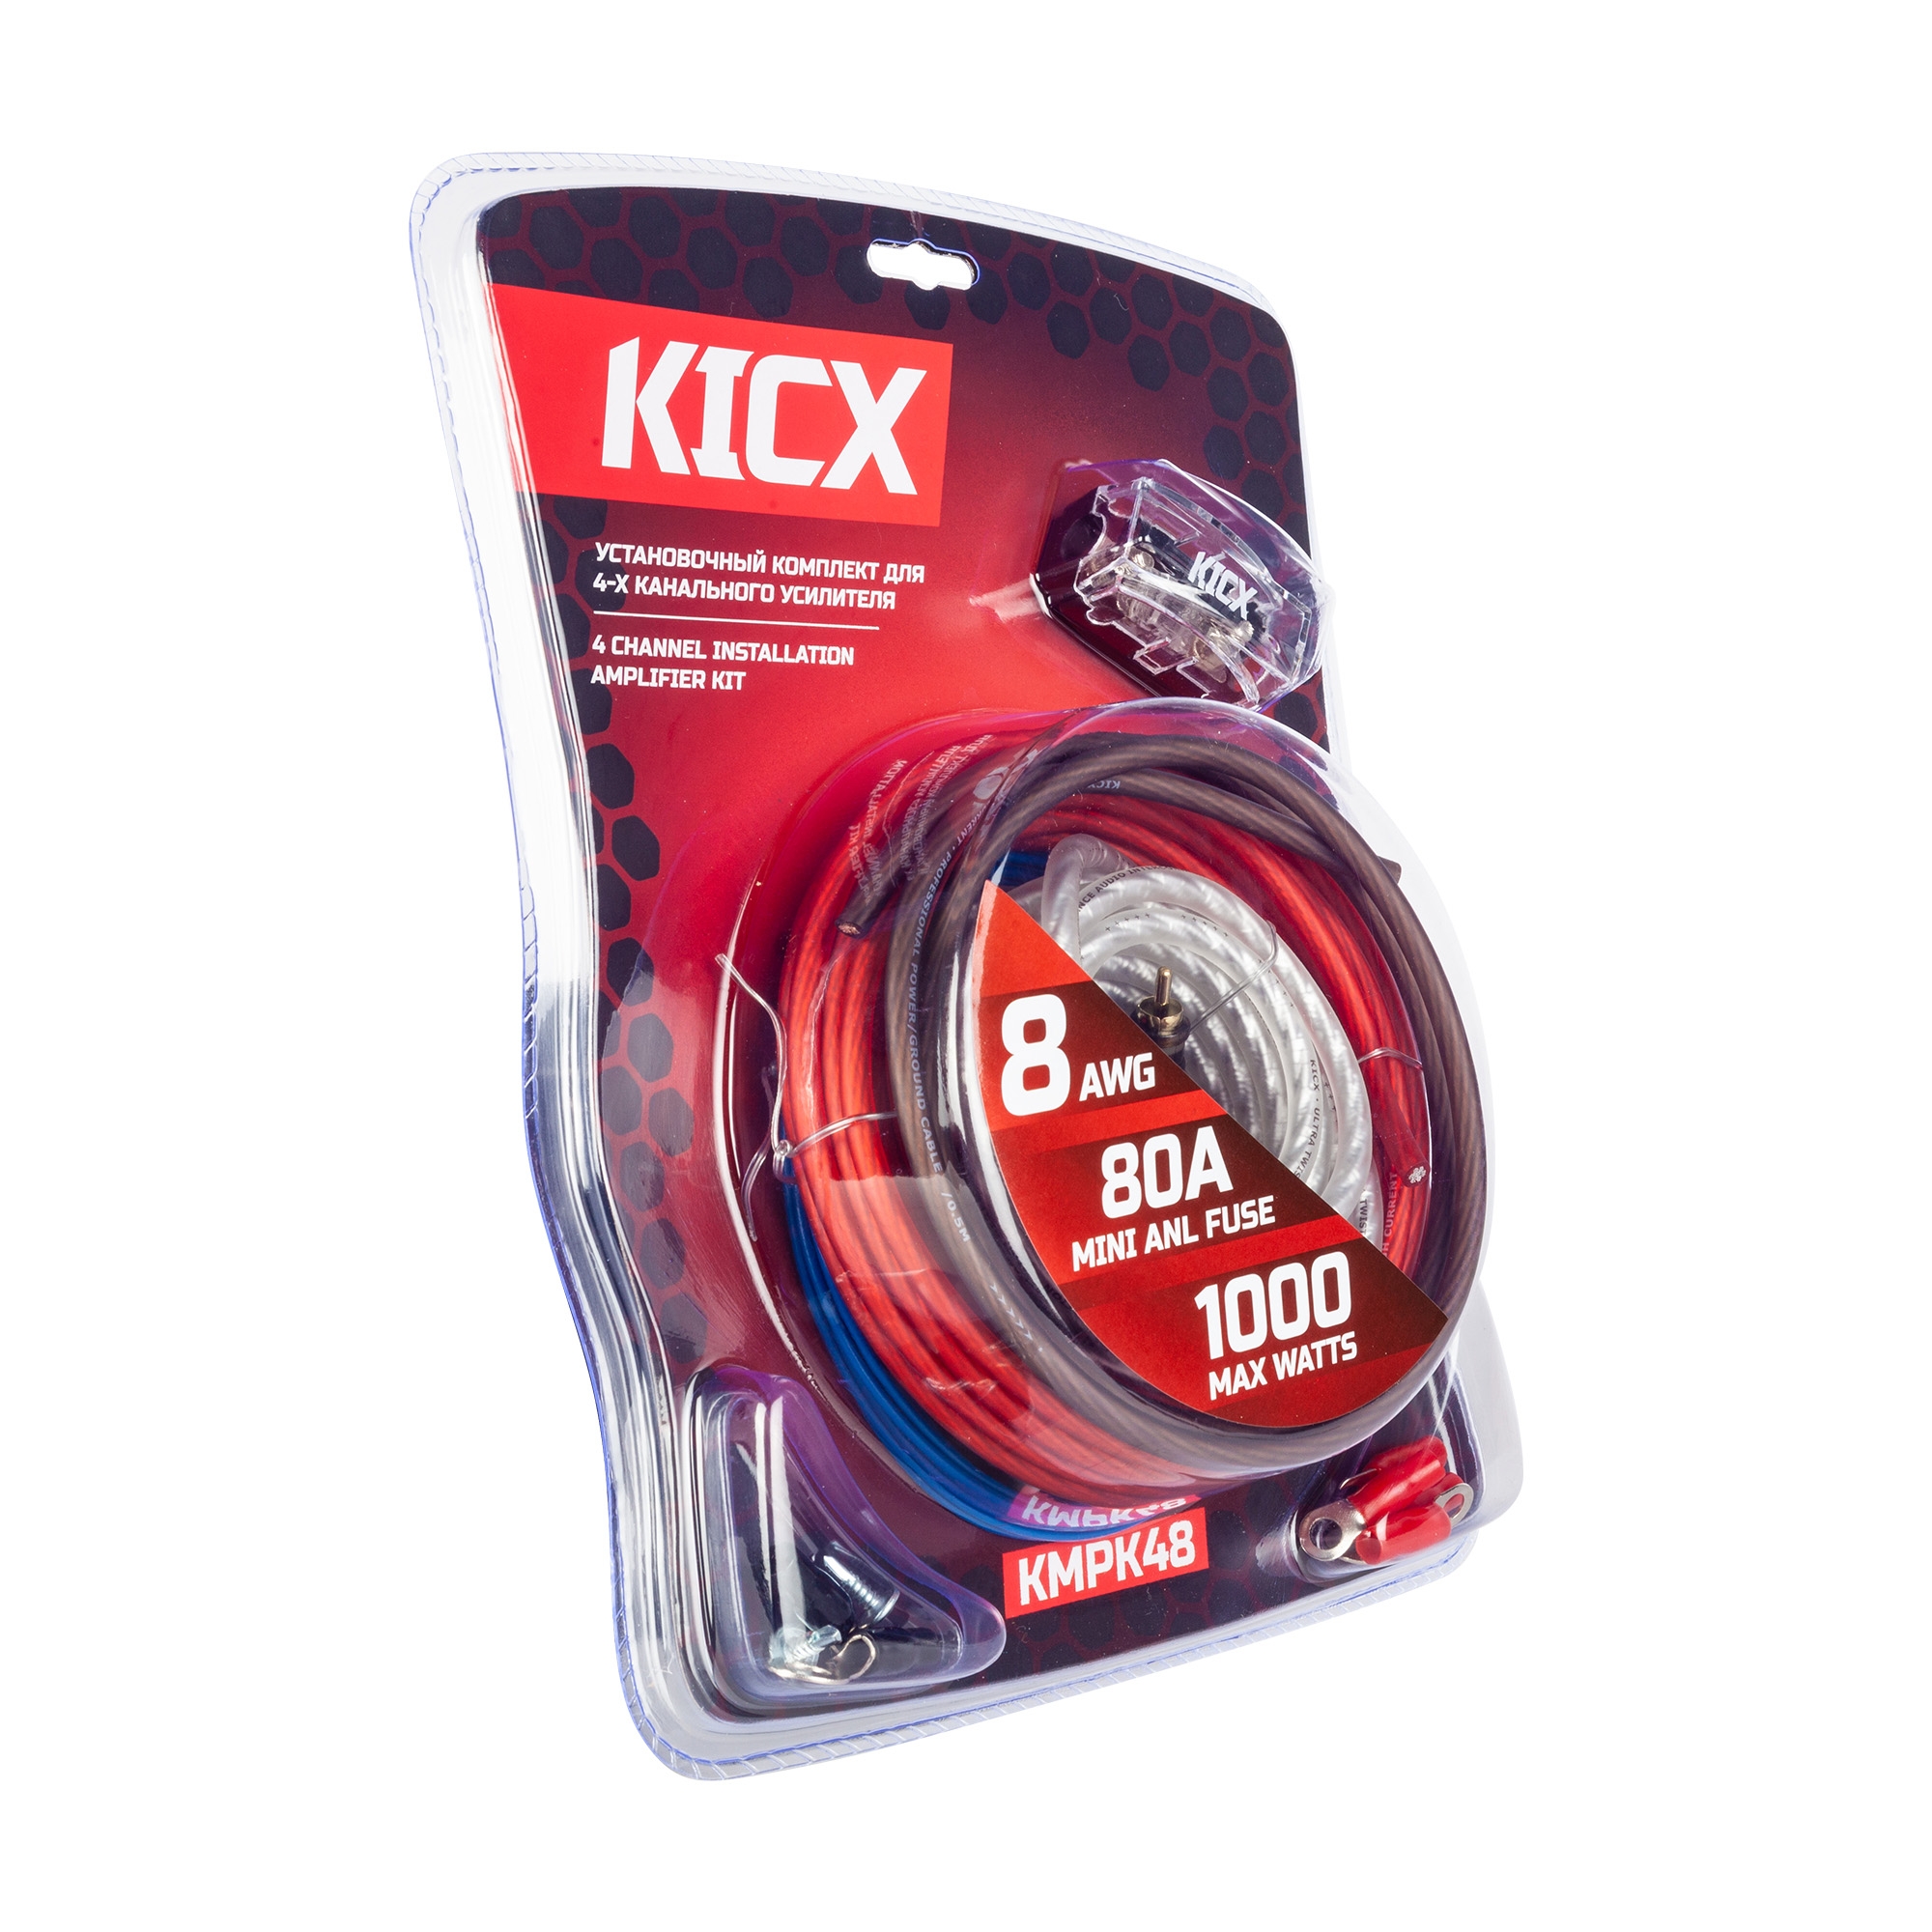 Kicx KMPK48 кабель для усилителя (комплект)